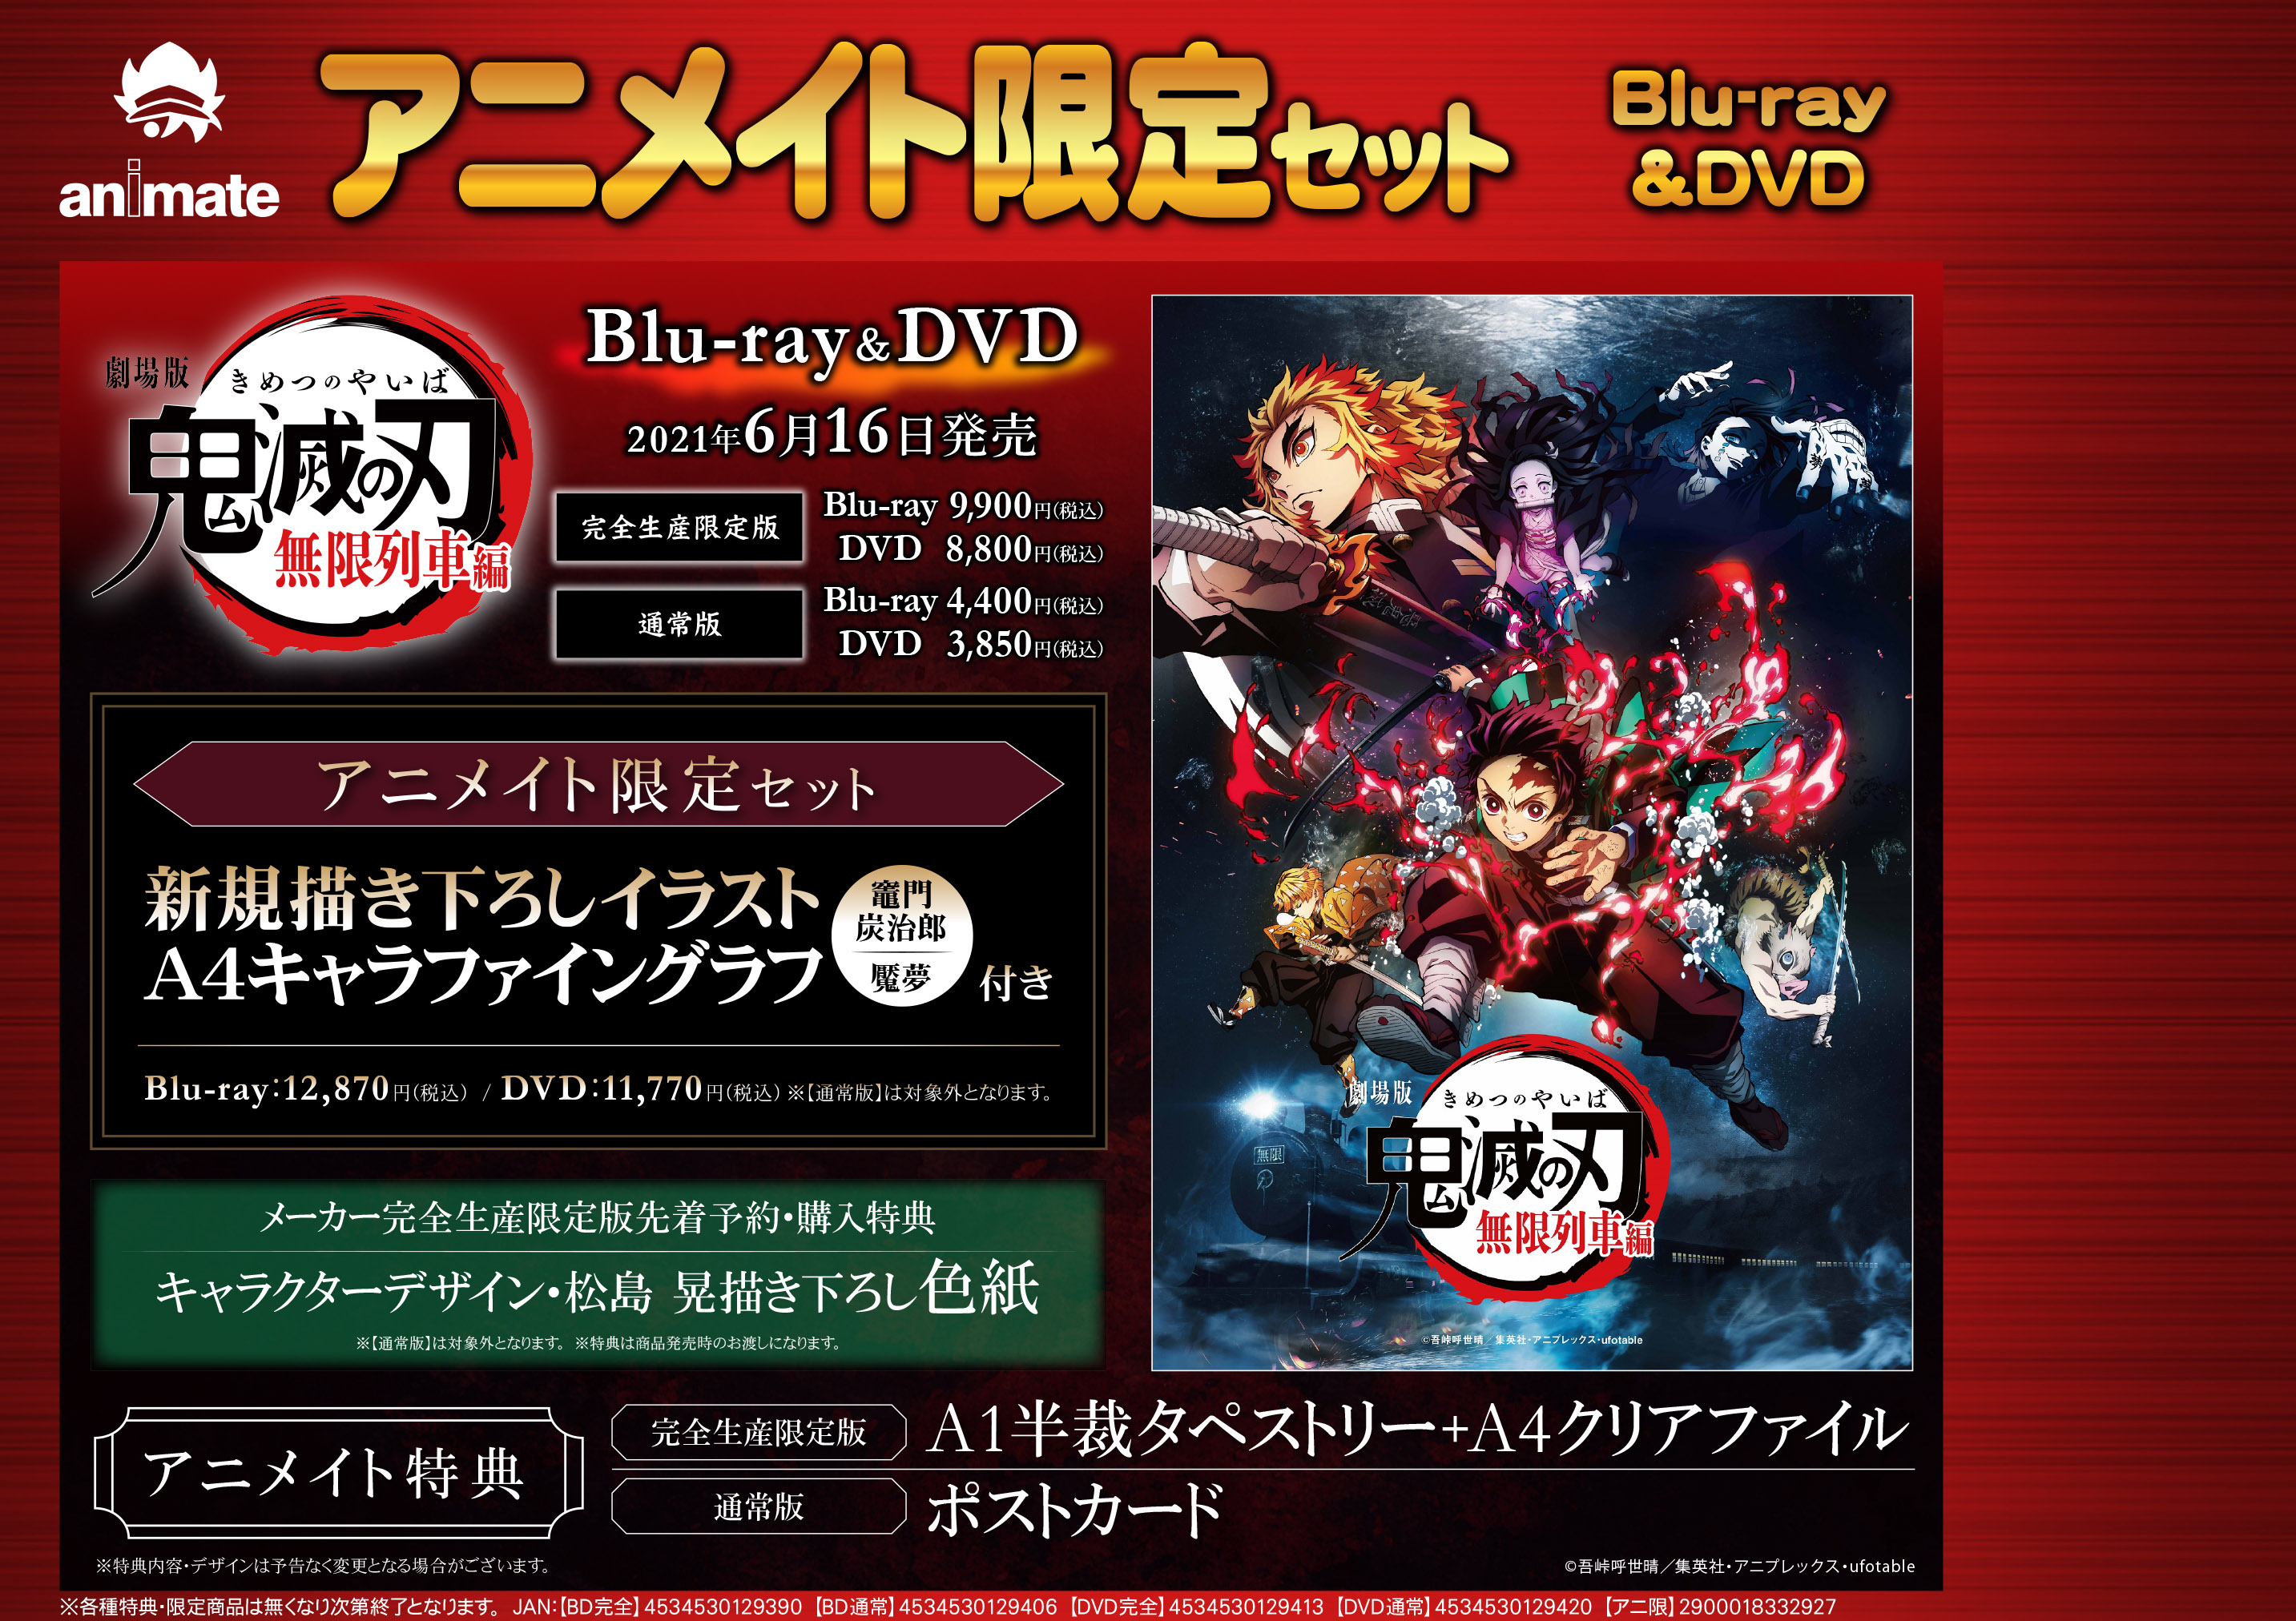 Blu-ray・DVD劇場版「鬼滅の刃」無限列車編 いよいよ6月16日発売